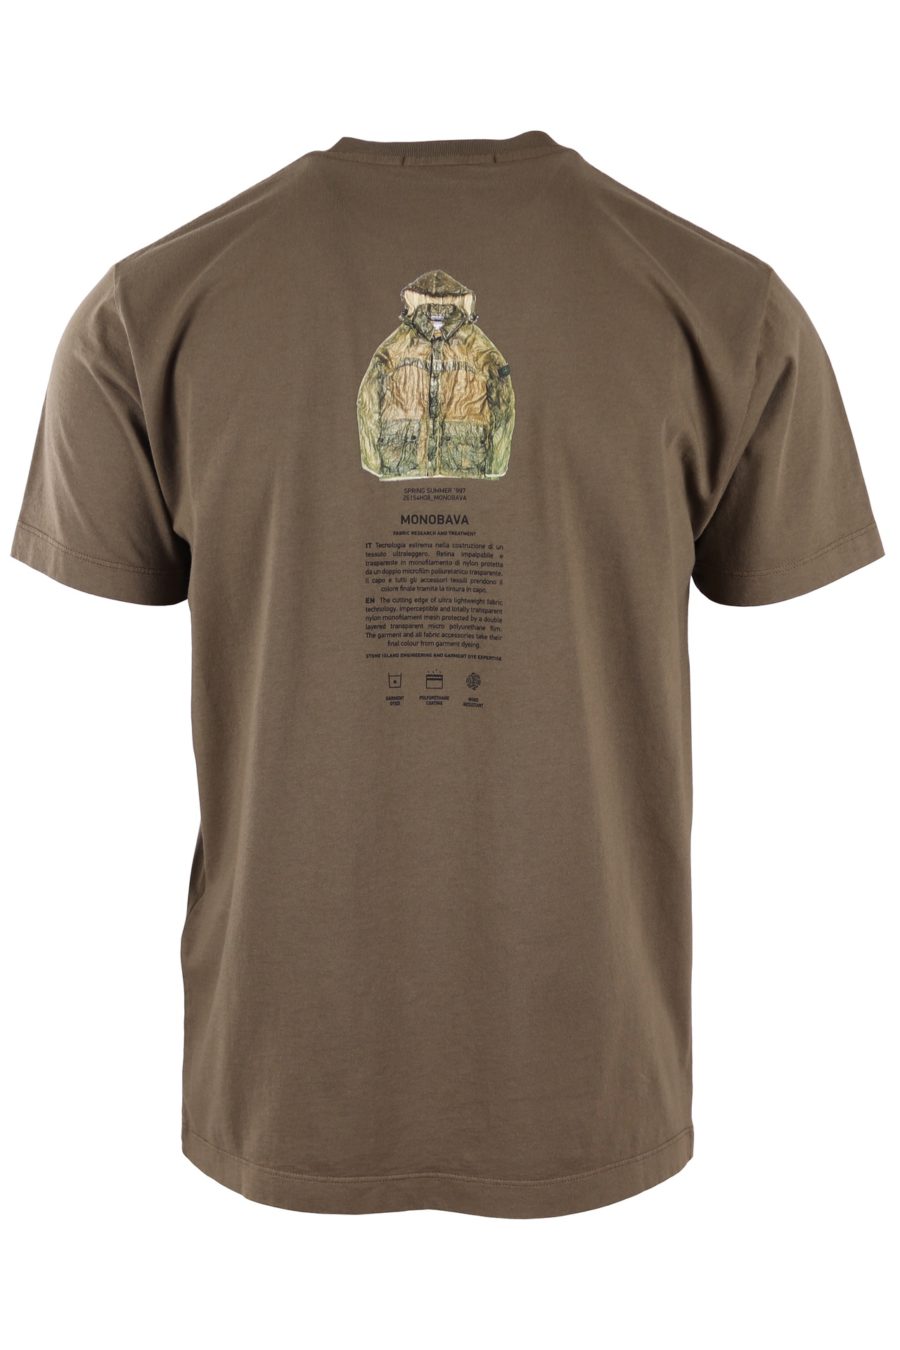 T-shirt Stone Island verde militar com logótipo "archivio" - e479b4f2340d93a5d2b6d33e1772abdc36ff26da